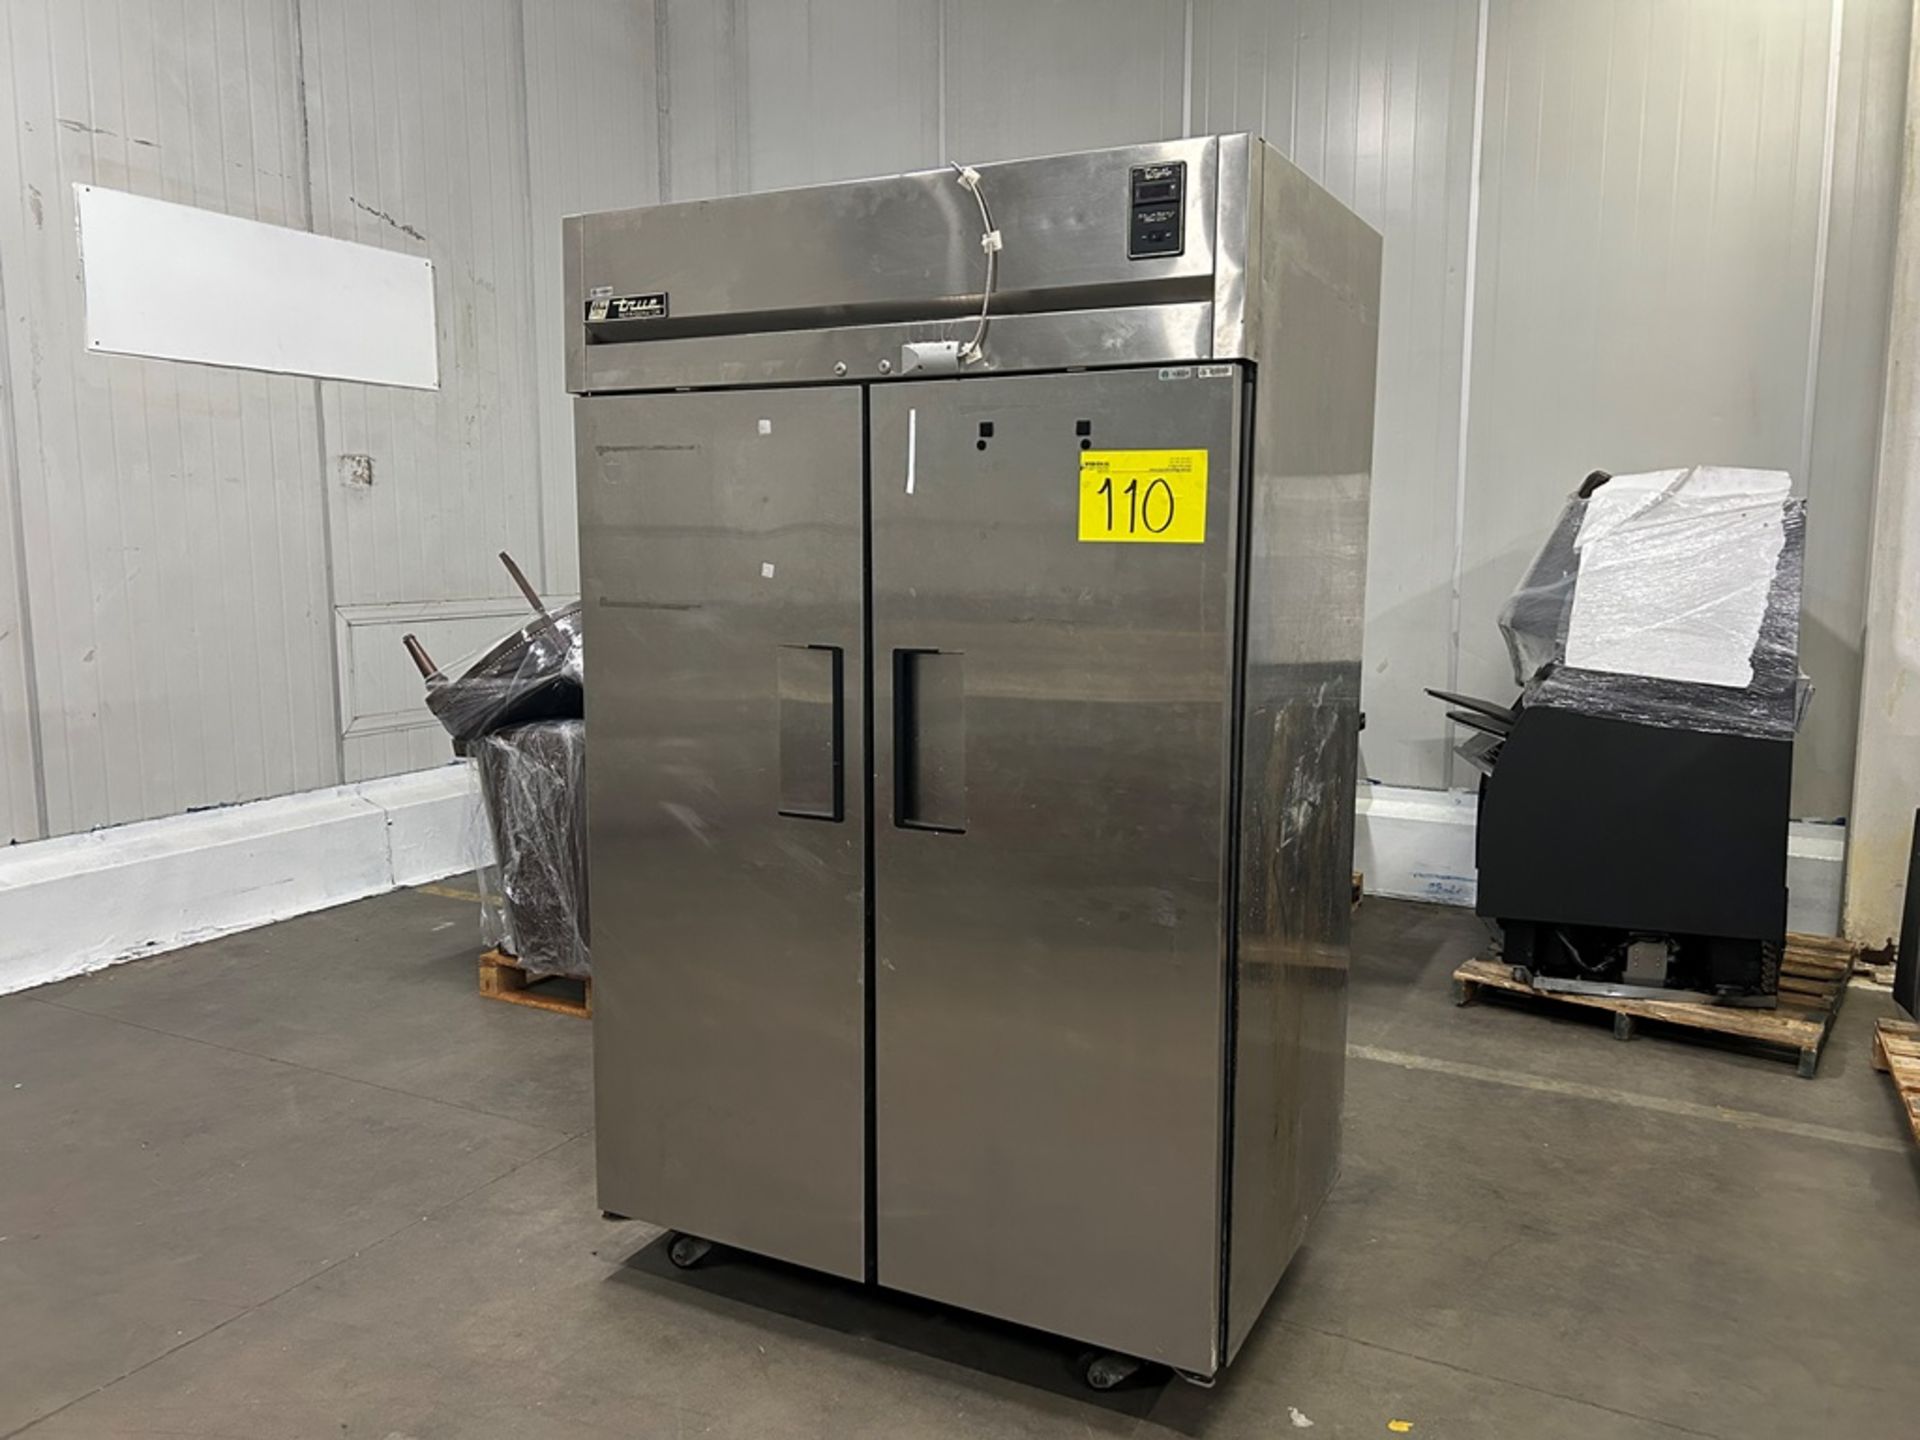 1 congelador vertical Marca true refrigerador, Modelo TA2R-2S, Serie 1-3941930, Medidas 195cmX88cm1 - Image 2 of 6